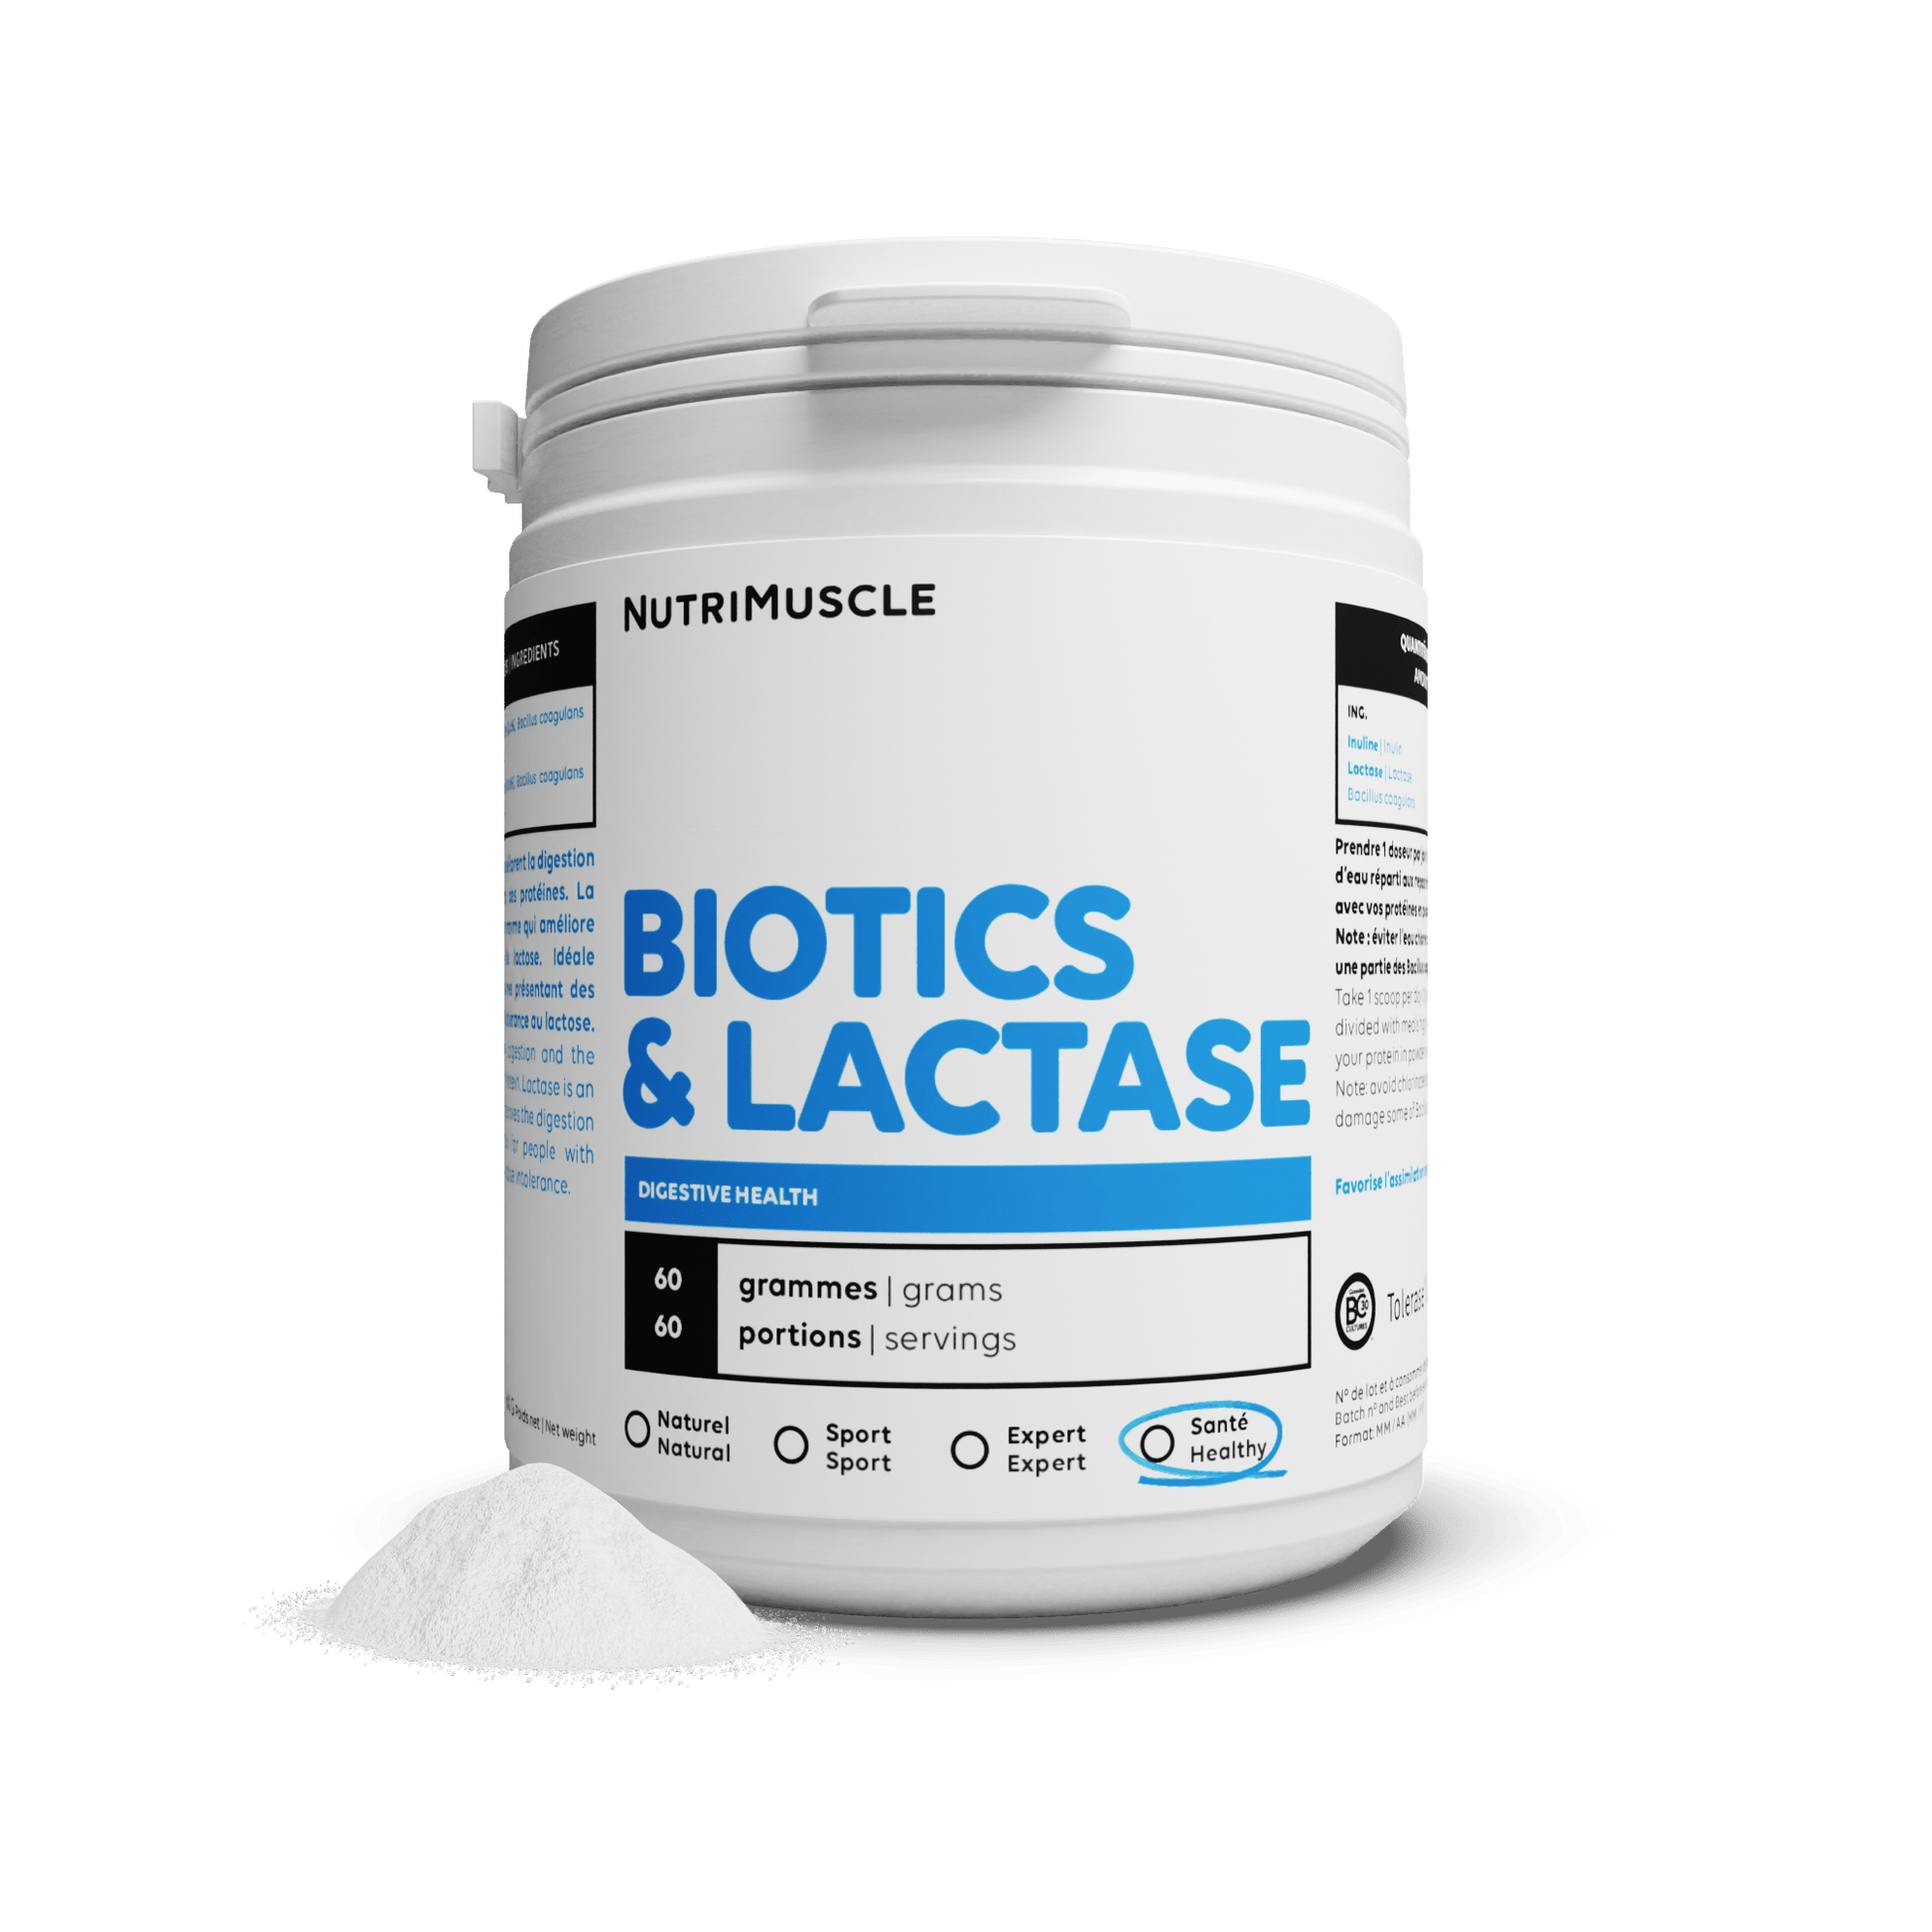 Nutrimuscle Nutriments Avec lactase / 60 g Biotiques